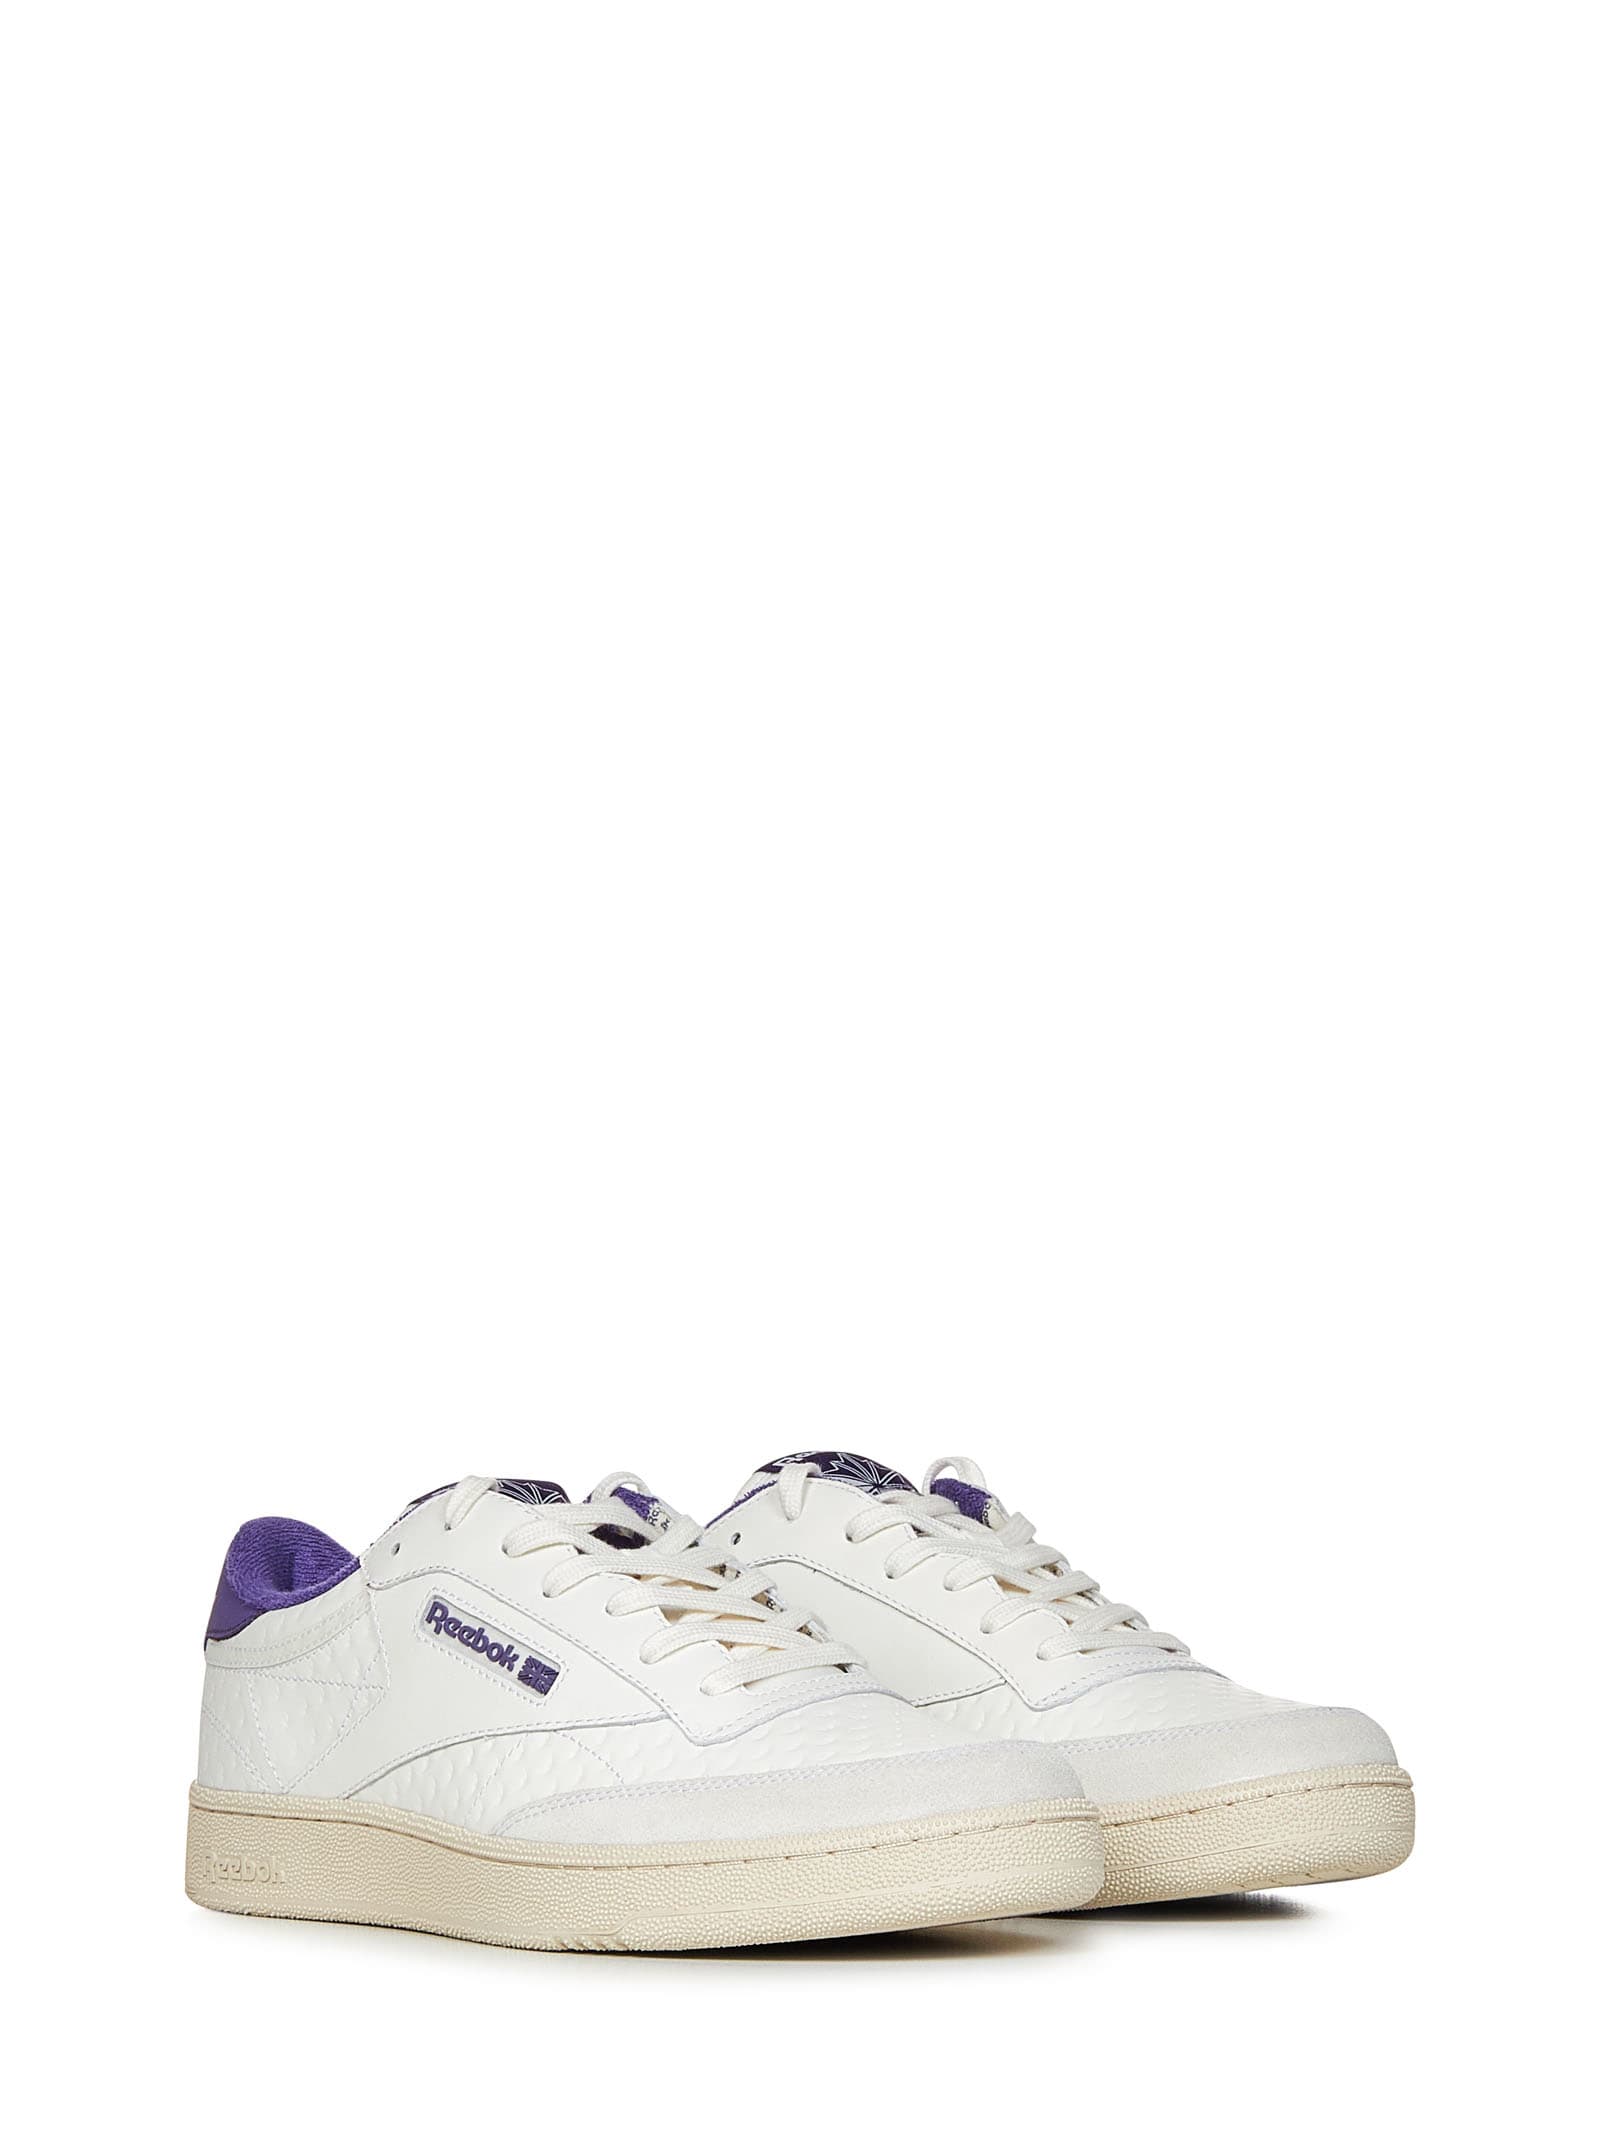 Shop Reebok Club C Sneakers In Violet